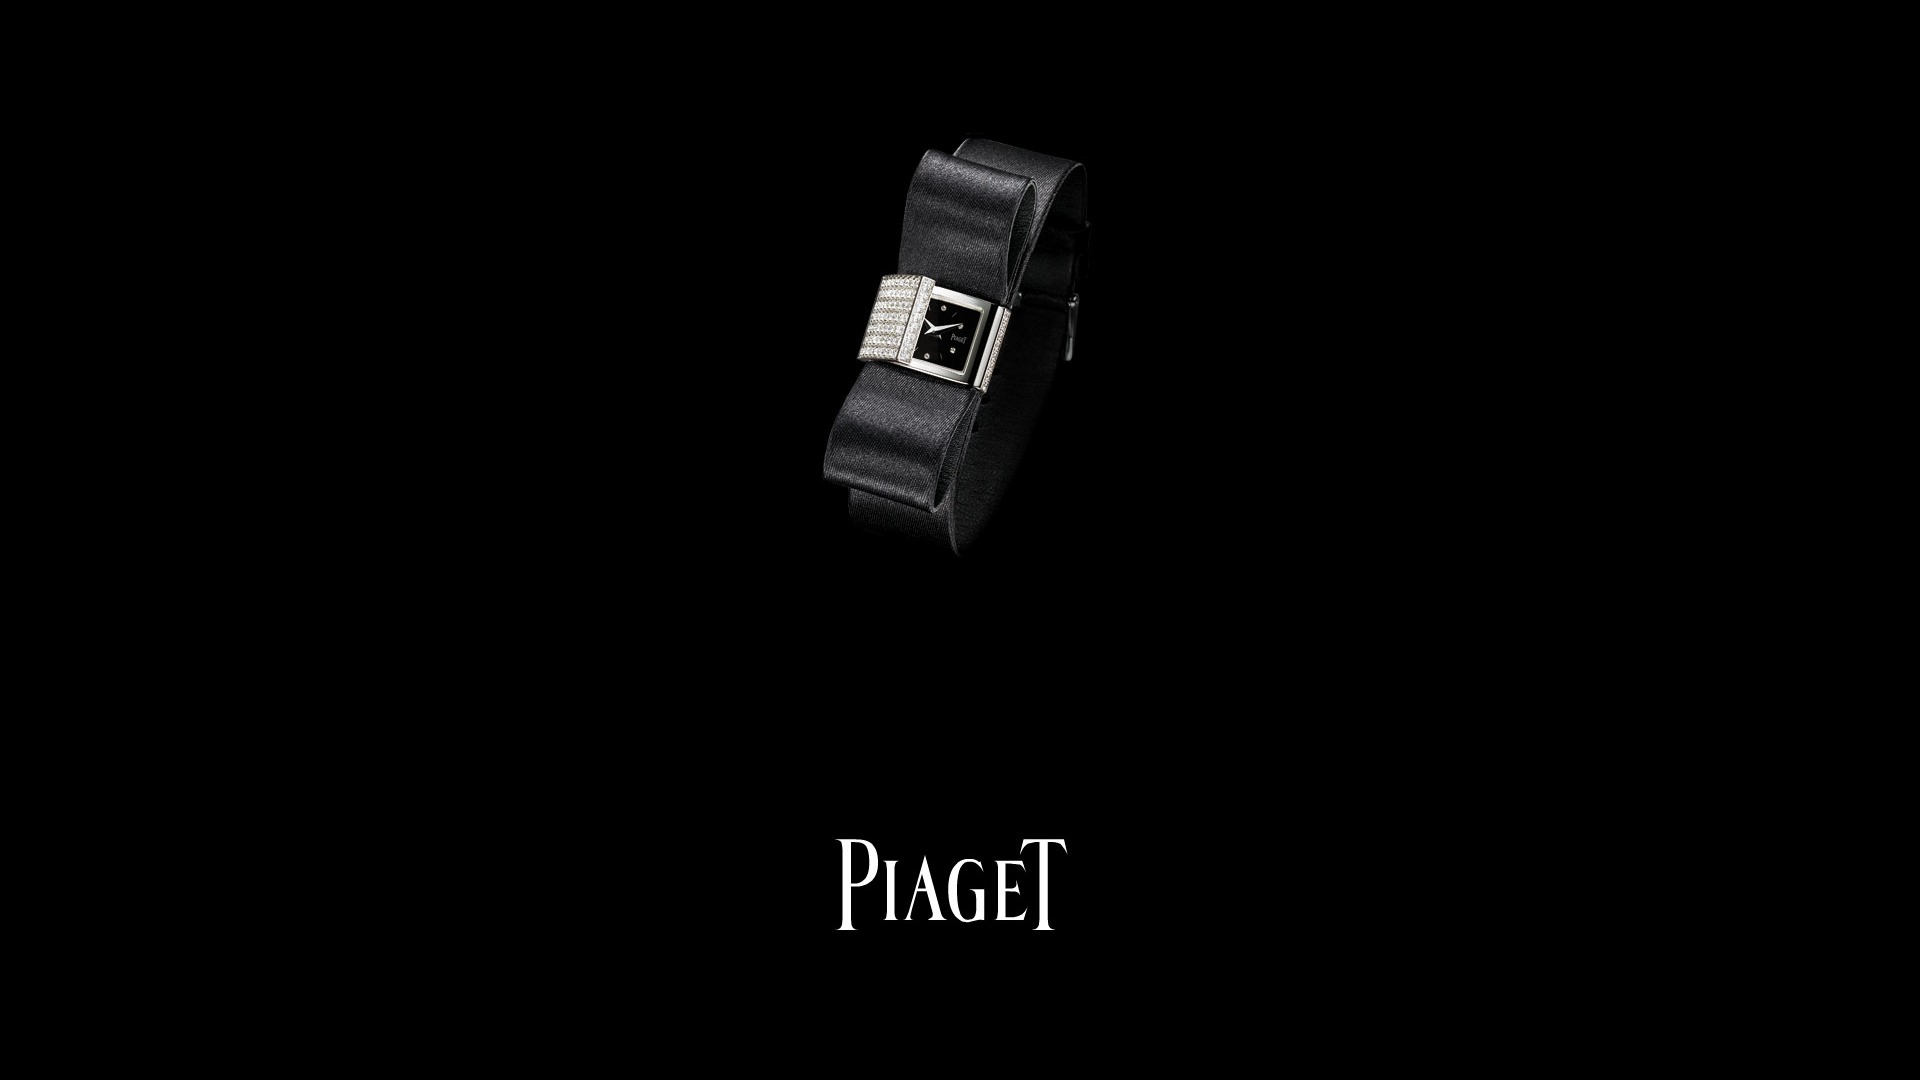 Piaget Diamante fondos de escritorio de reloj (2) #12 - 1920x1080